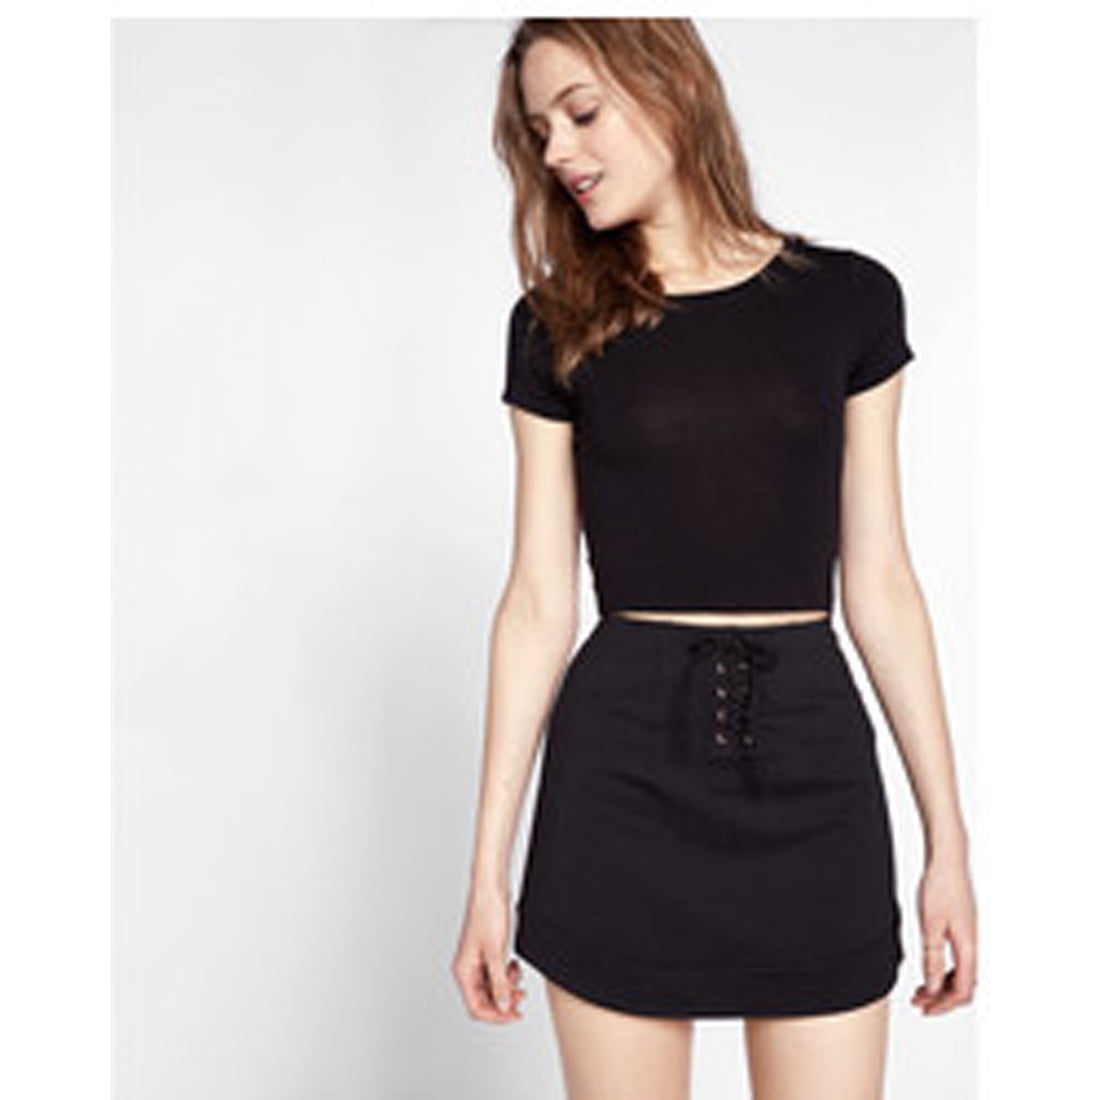 Express - Express Women's Lace Up Skirt , Black, 00 - Walmart.com ...